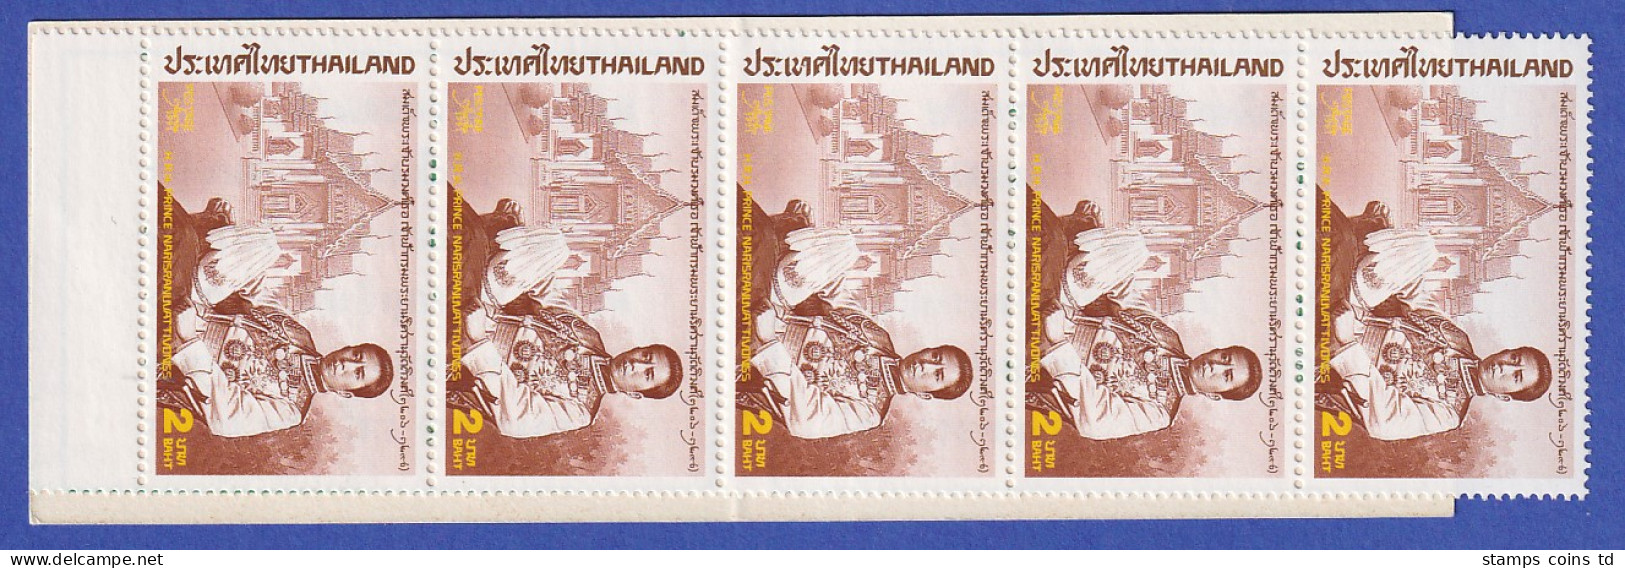 Thailand 1991 Prinz Narisranuvattivongs Mi.-Nr. 1411 Markenheftchen ** / MNH - Thailand